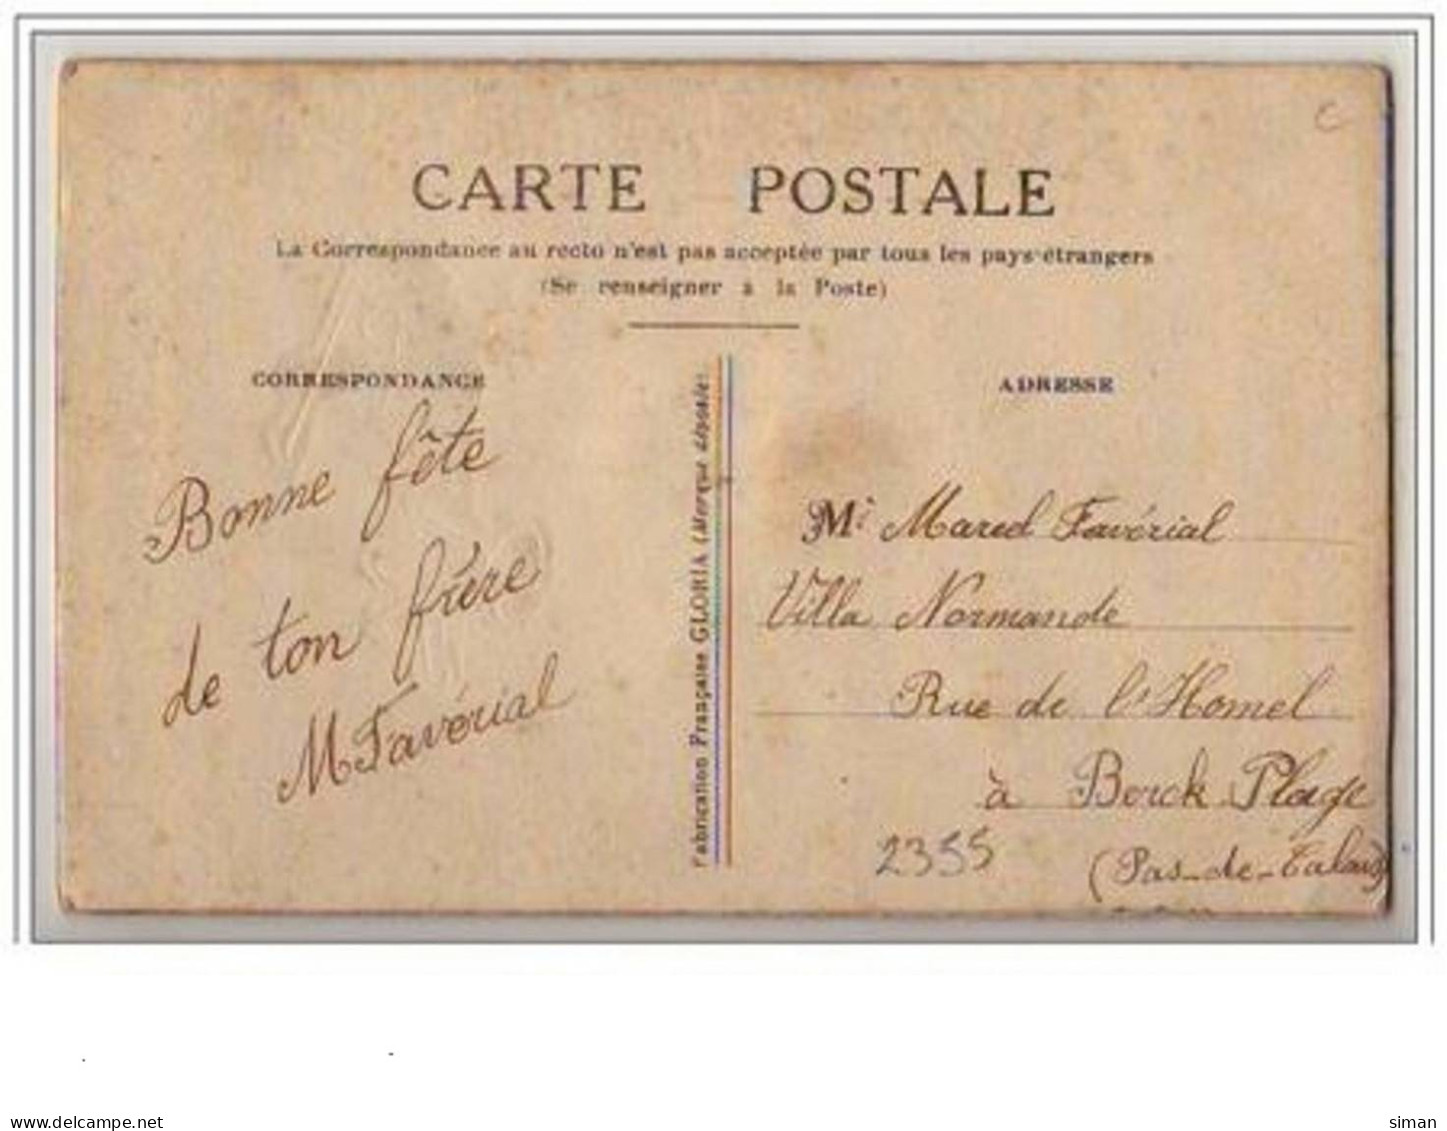 N°2355 - Carte Brodée - Bonne Fête - Horondelle Apportant Le Courrier - Ricamate